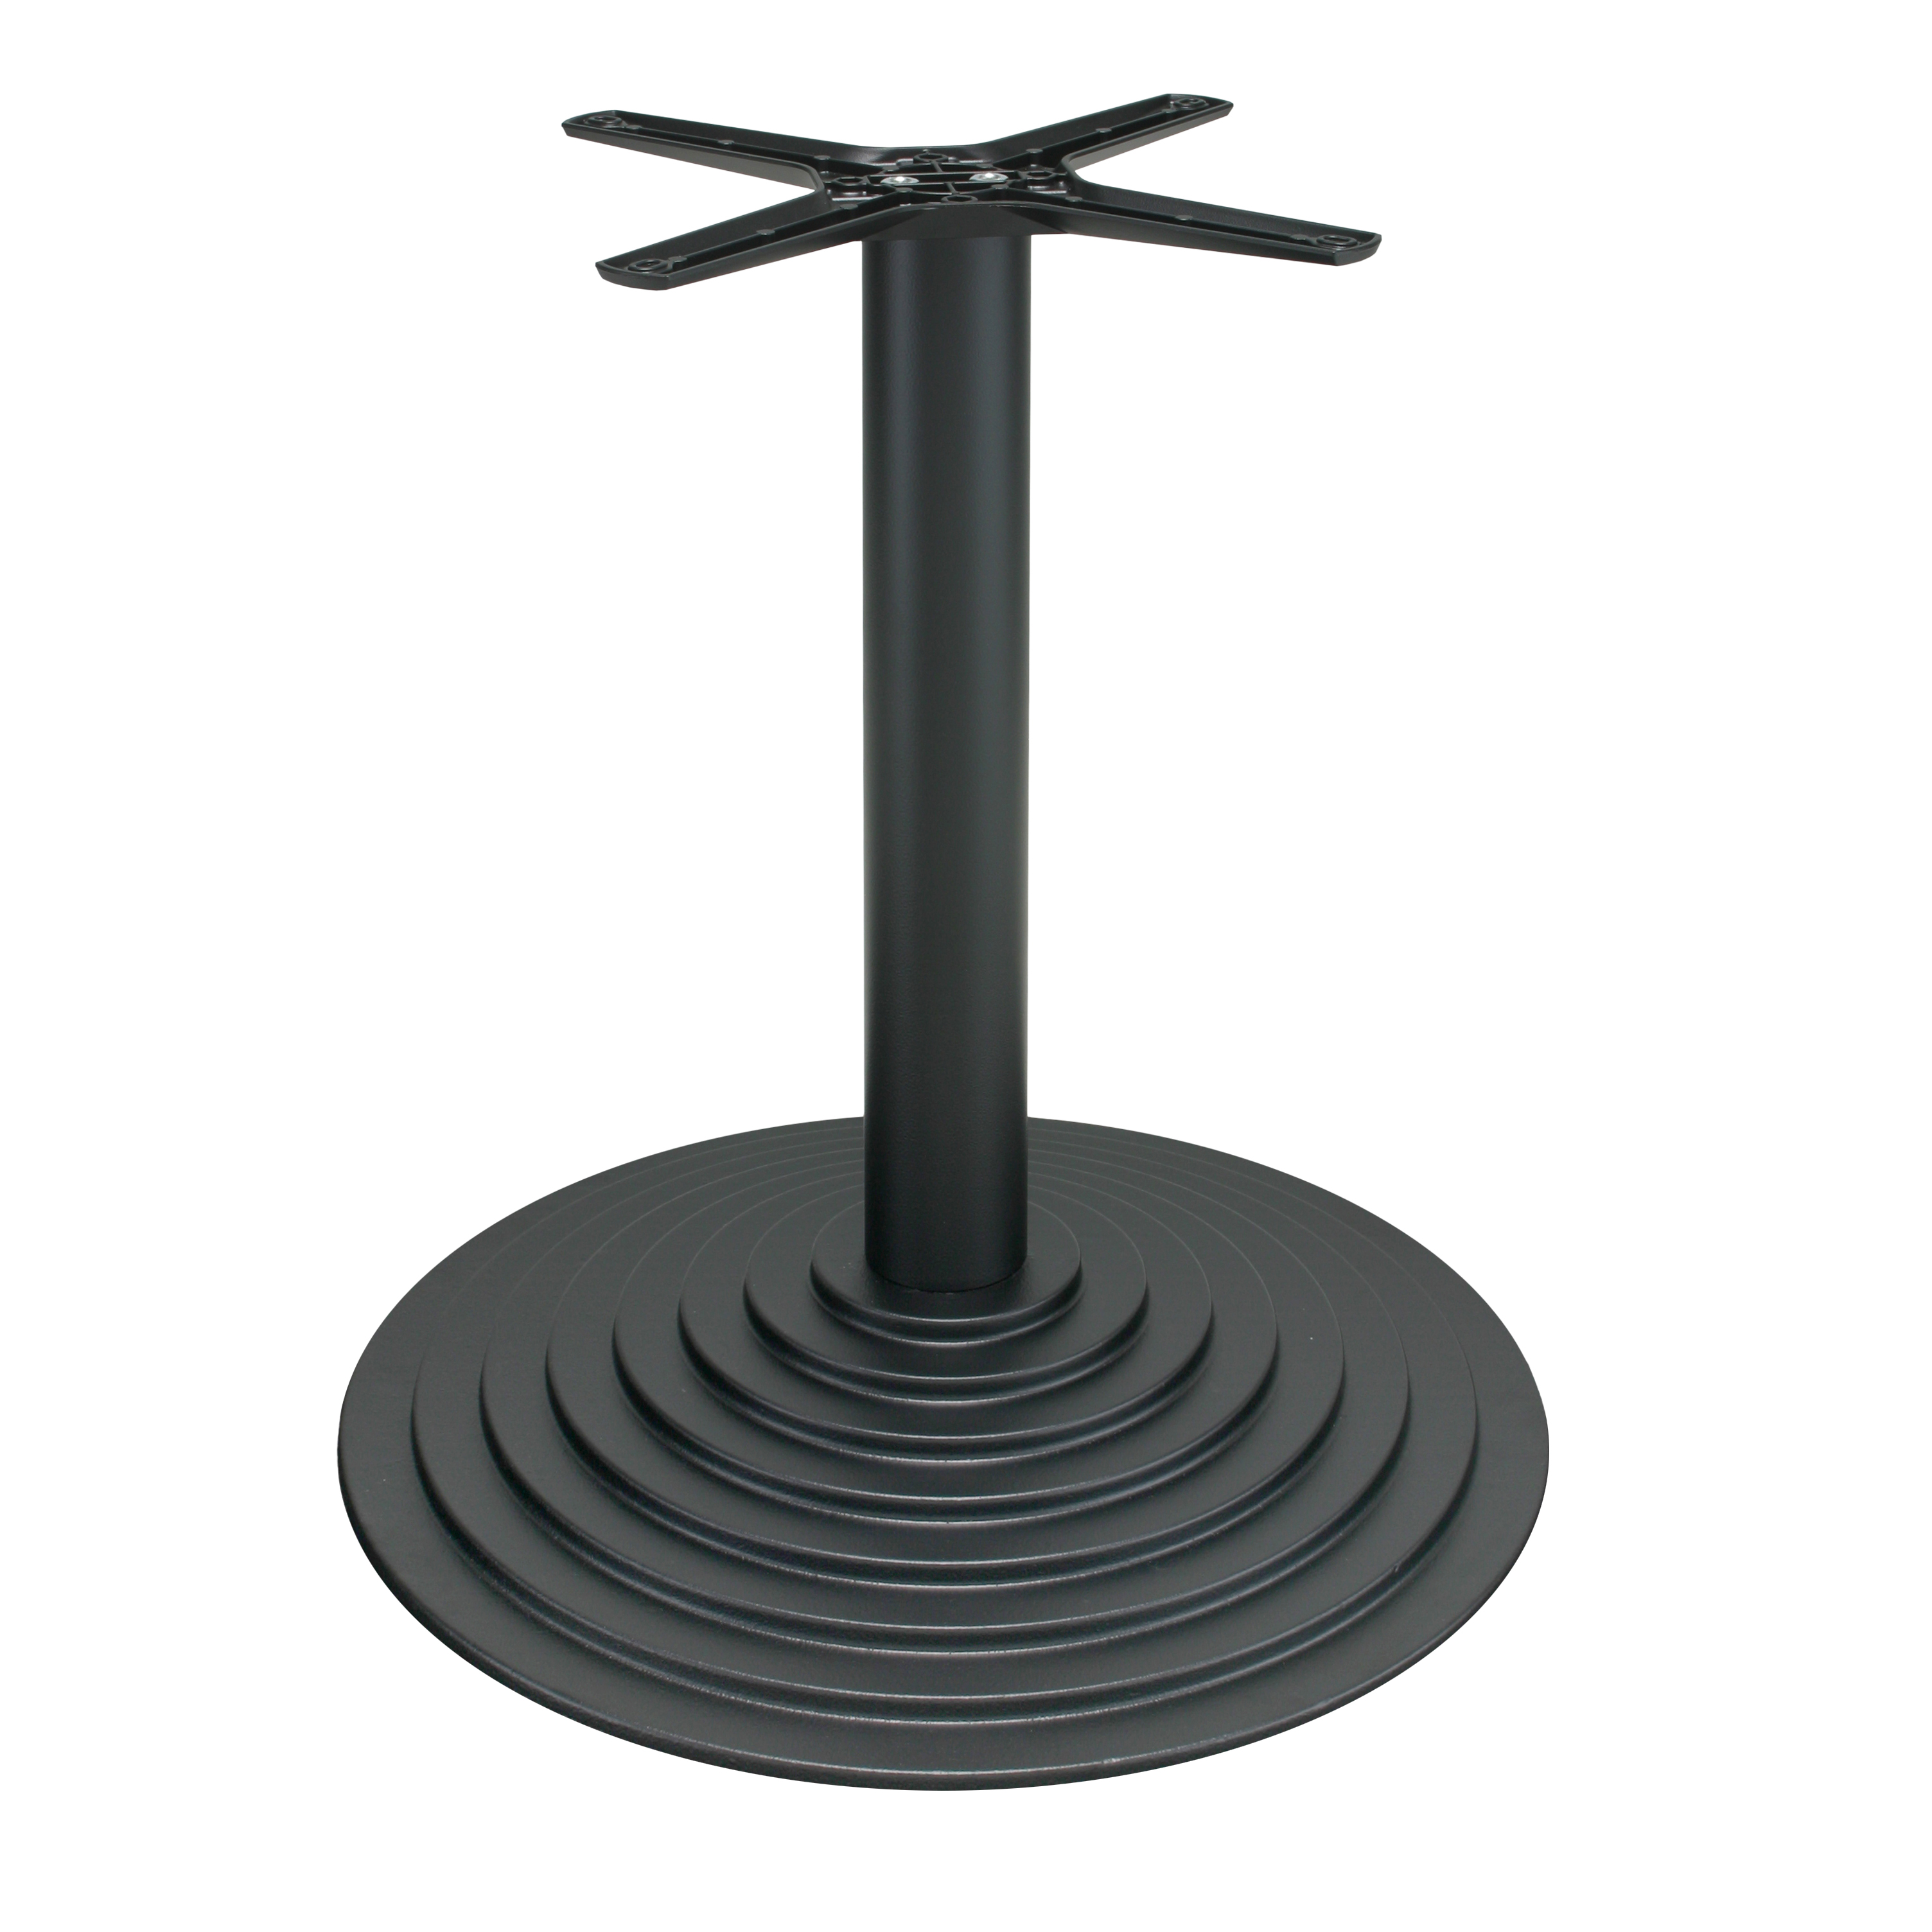 Tischgestell P600 aus Gusseisen, pulverbeschichtet - schwarz, runde Bodenplatte